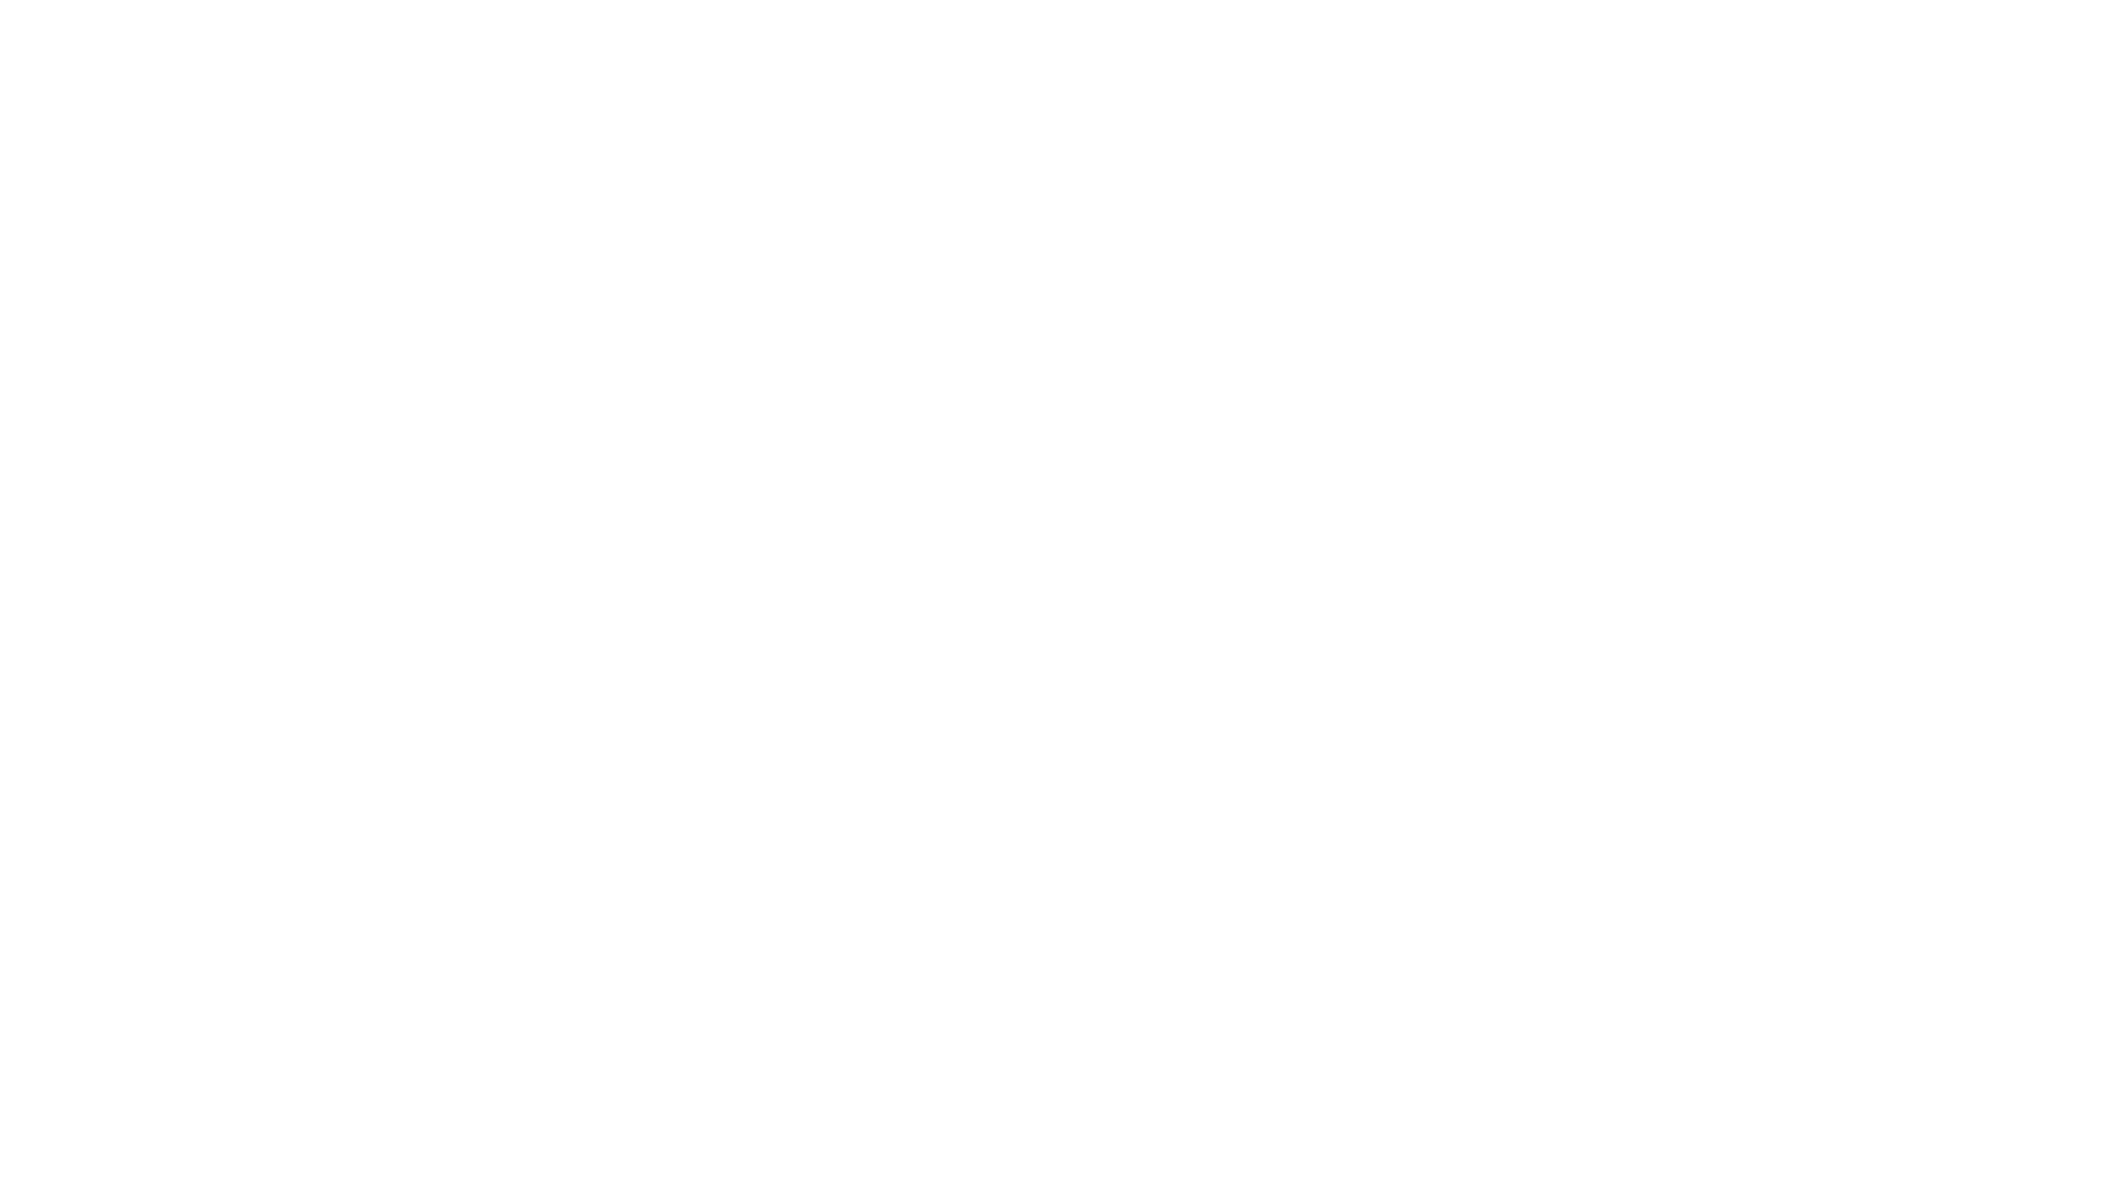 cbts_logo_rgb_reversed_2color